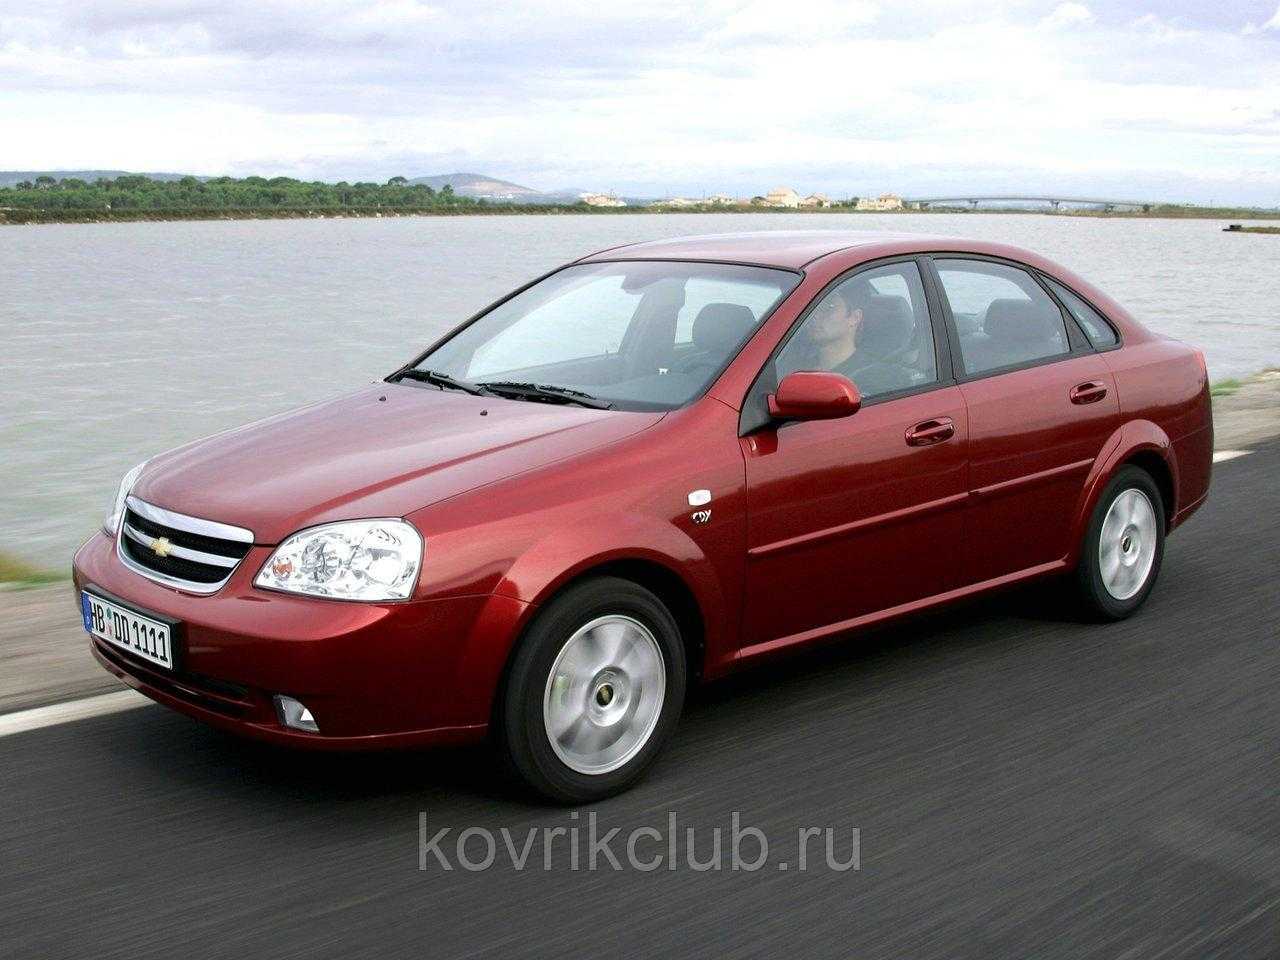 Технические характеристики Шевроле Лачетти и стоимость в России Обзоры всех Chevrolet Lacetti с фото